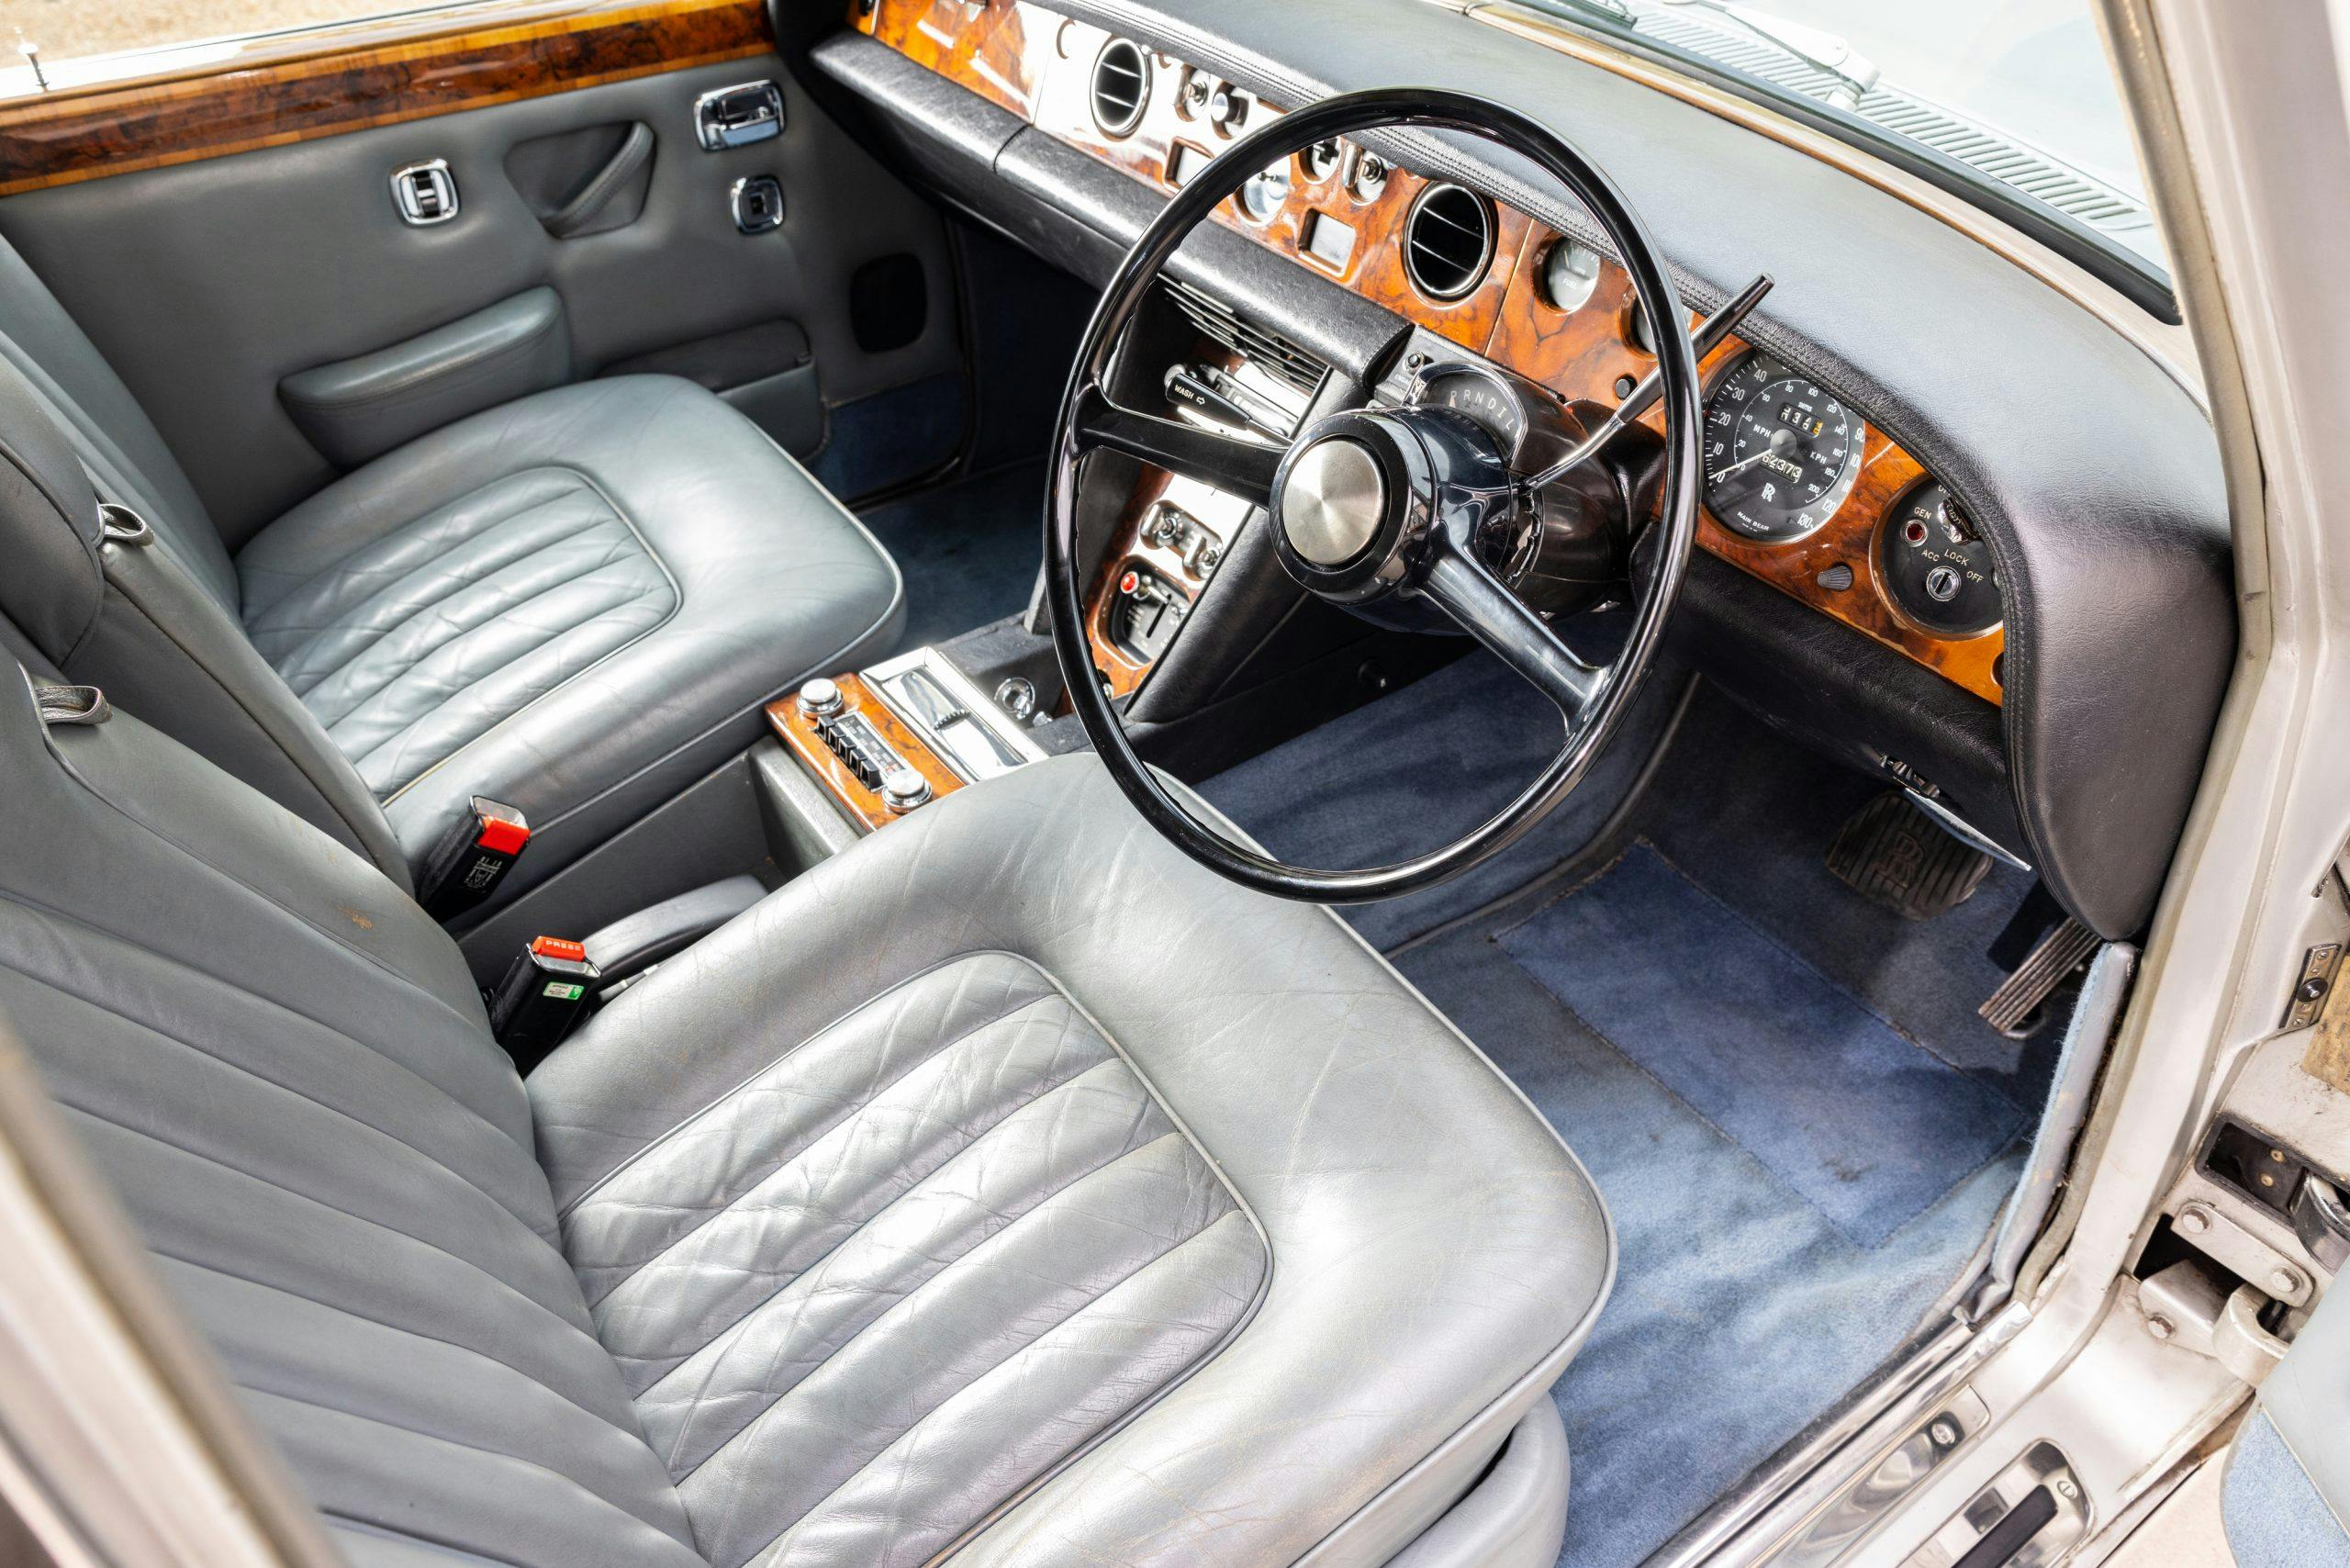 Freddy Mercury 1974 Rolls Royce Silver Shadow interior